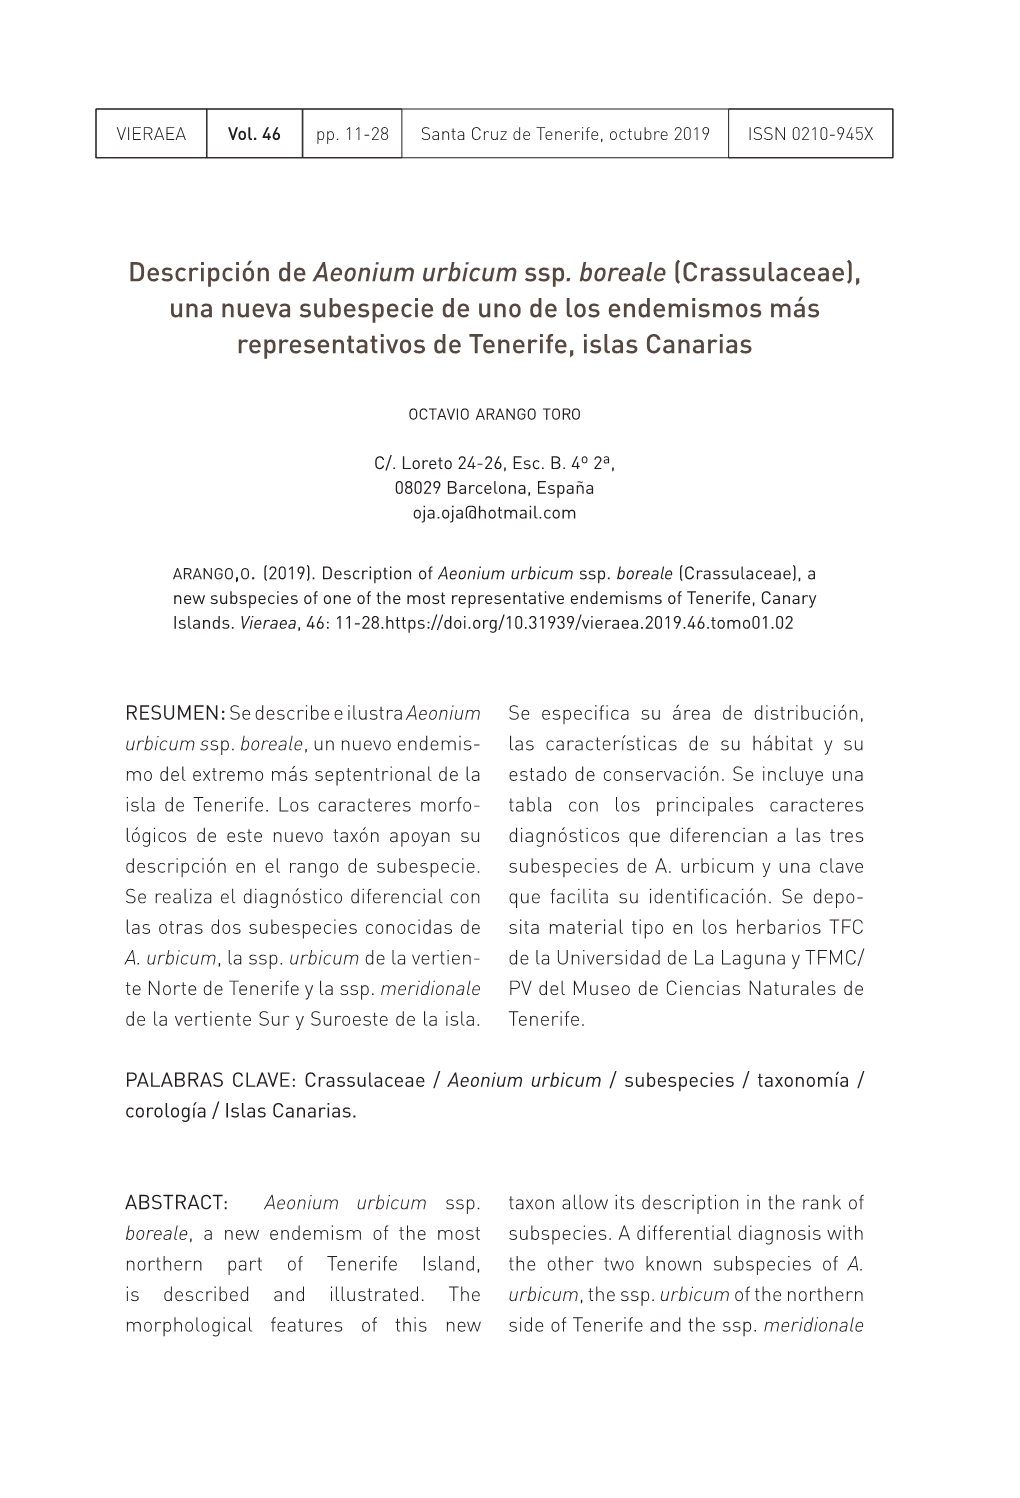 Descripción De Aeonium Urbicum Ssp. Boreale (Crassulaceae), Una Nueva Subespecie De Uno De Los Endemismos Más Representativos De Tenerife, Islas Canarias